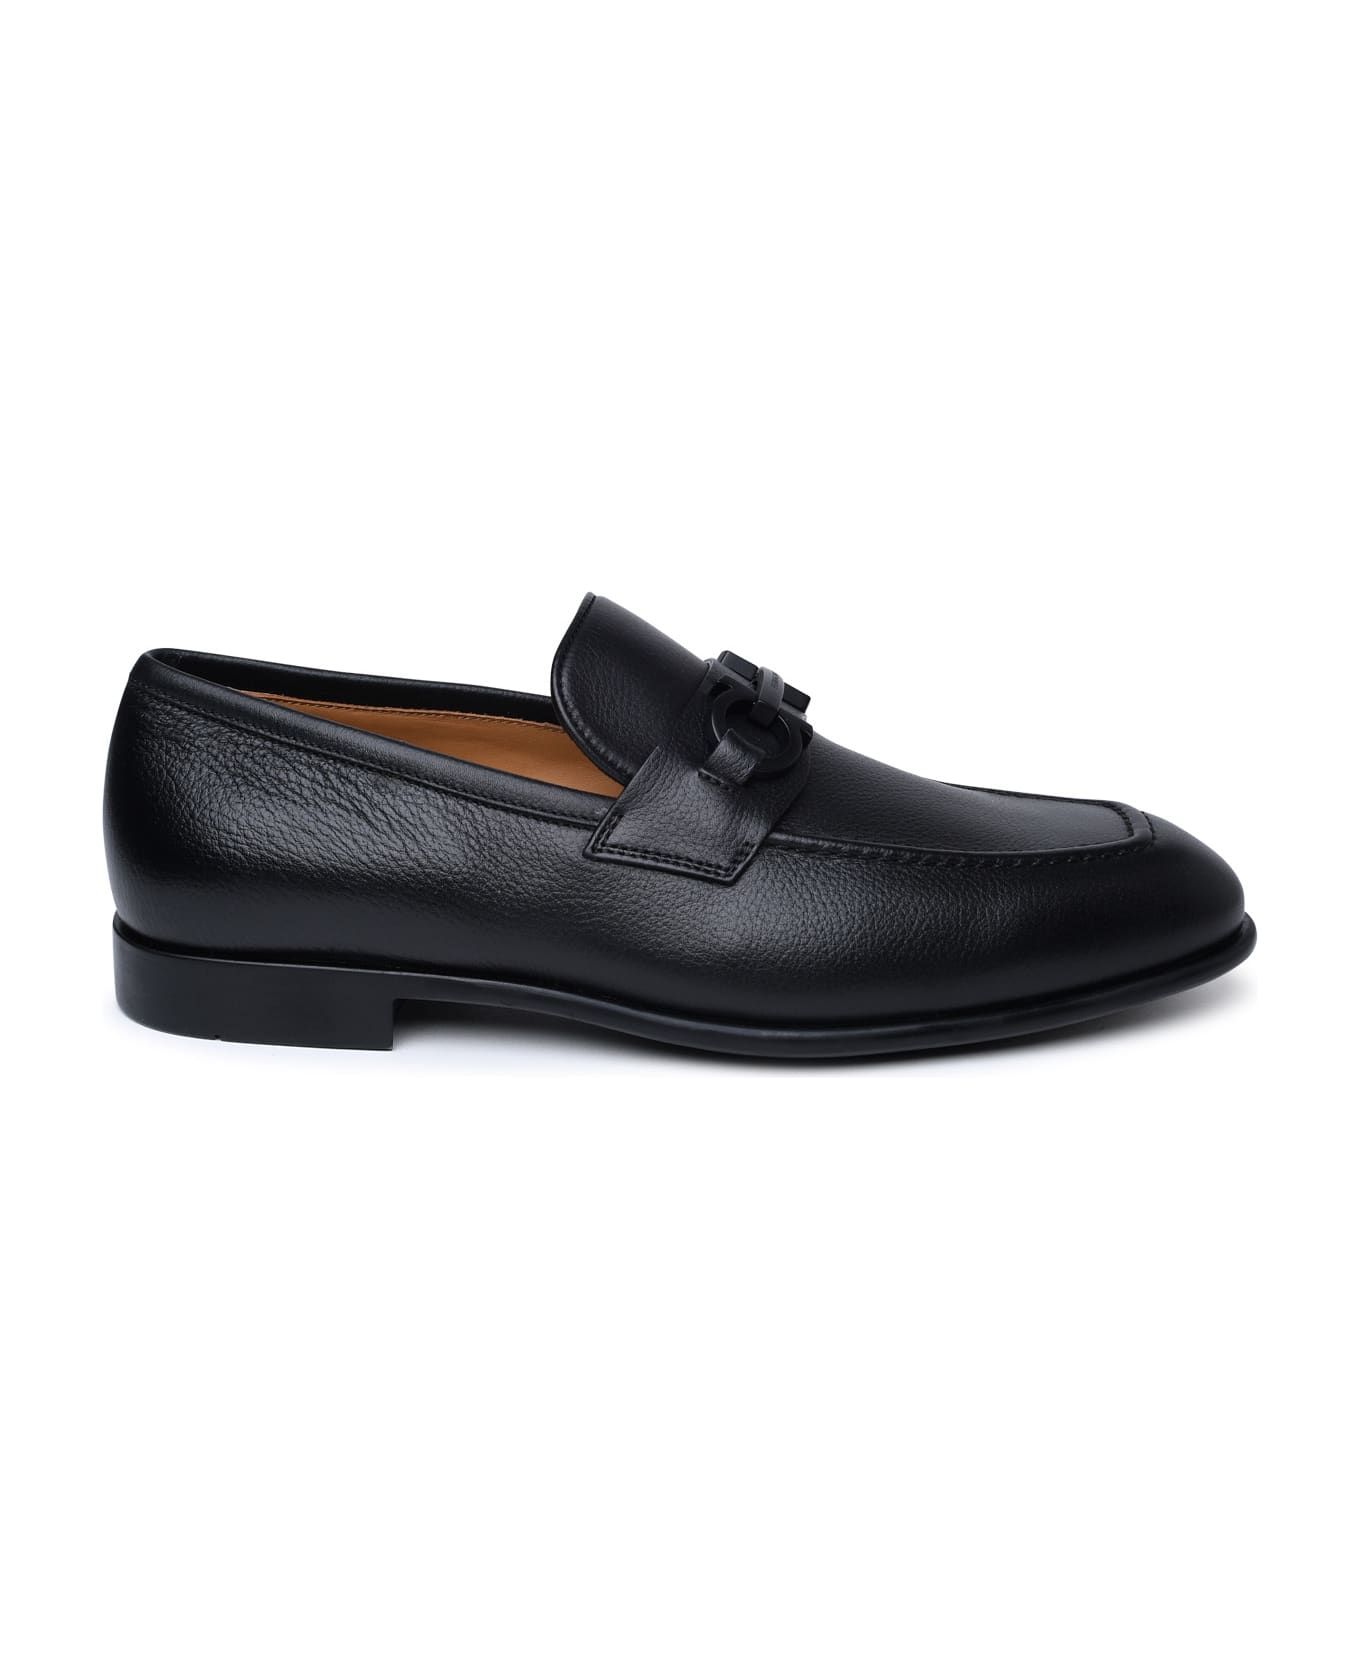 Ferragamo Black Leather Loafers - Black